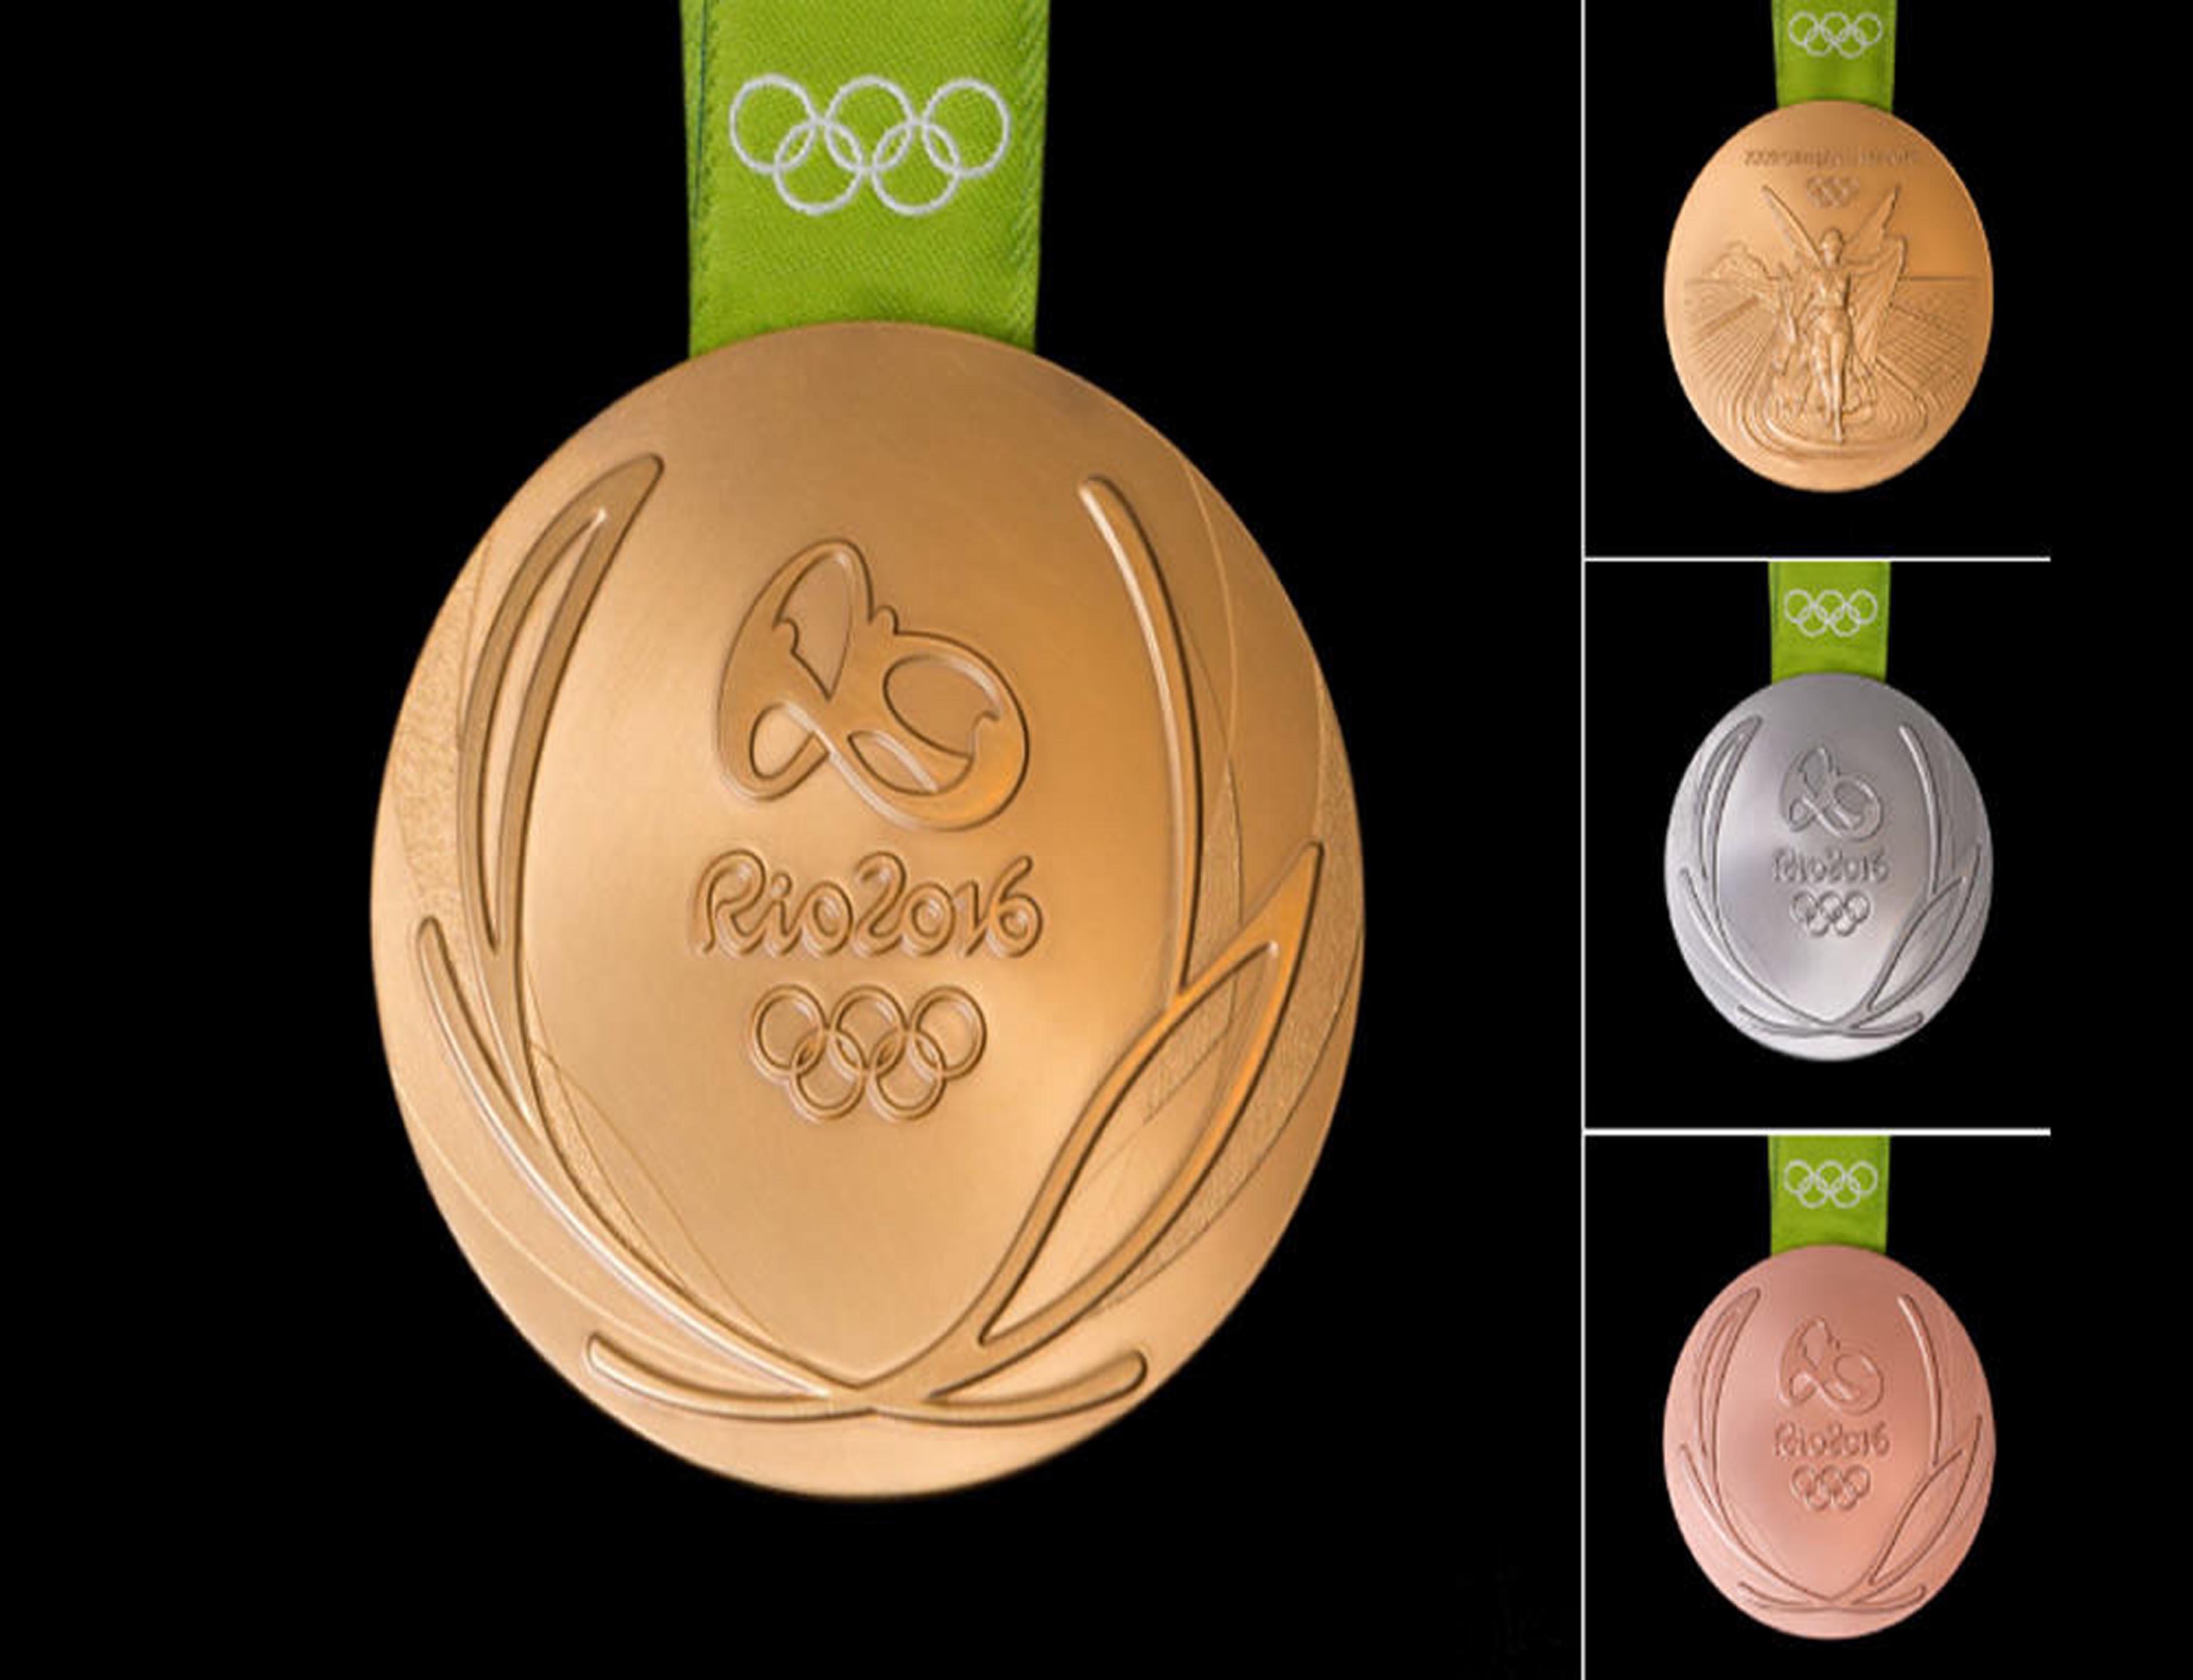 medallas juegos olimpicos